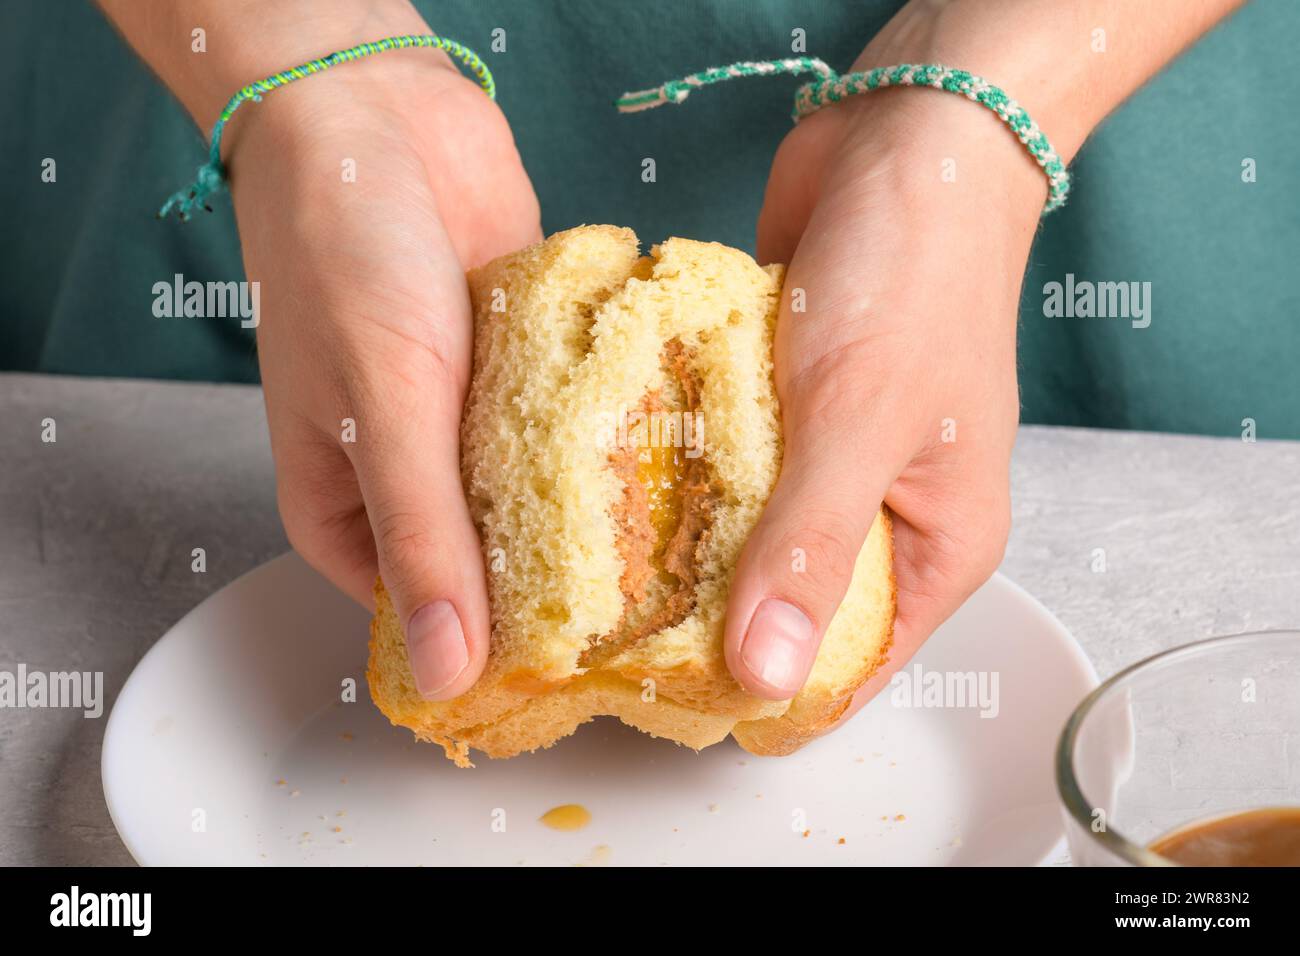 les mains de la femme brisant un sandwich avec du miel et du beurre d'arachide de pain de blé sur une assiette blanche, pour prendre un petit déjeuner, de près. Snack typique, nourriture Banque D'Images